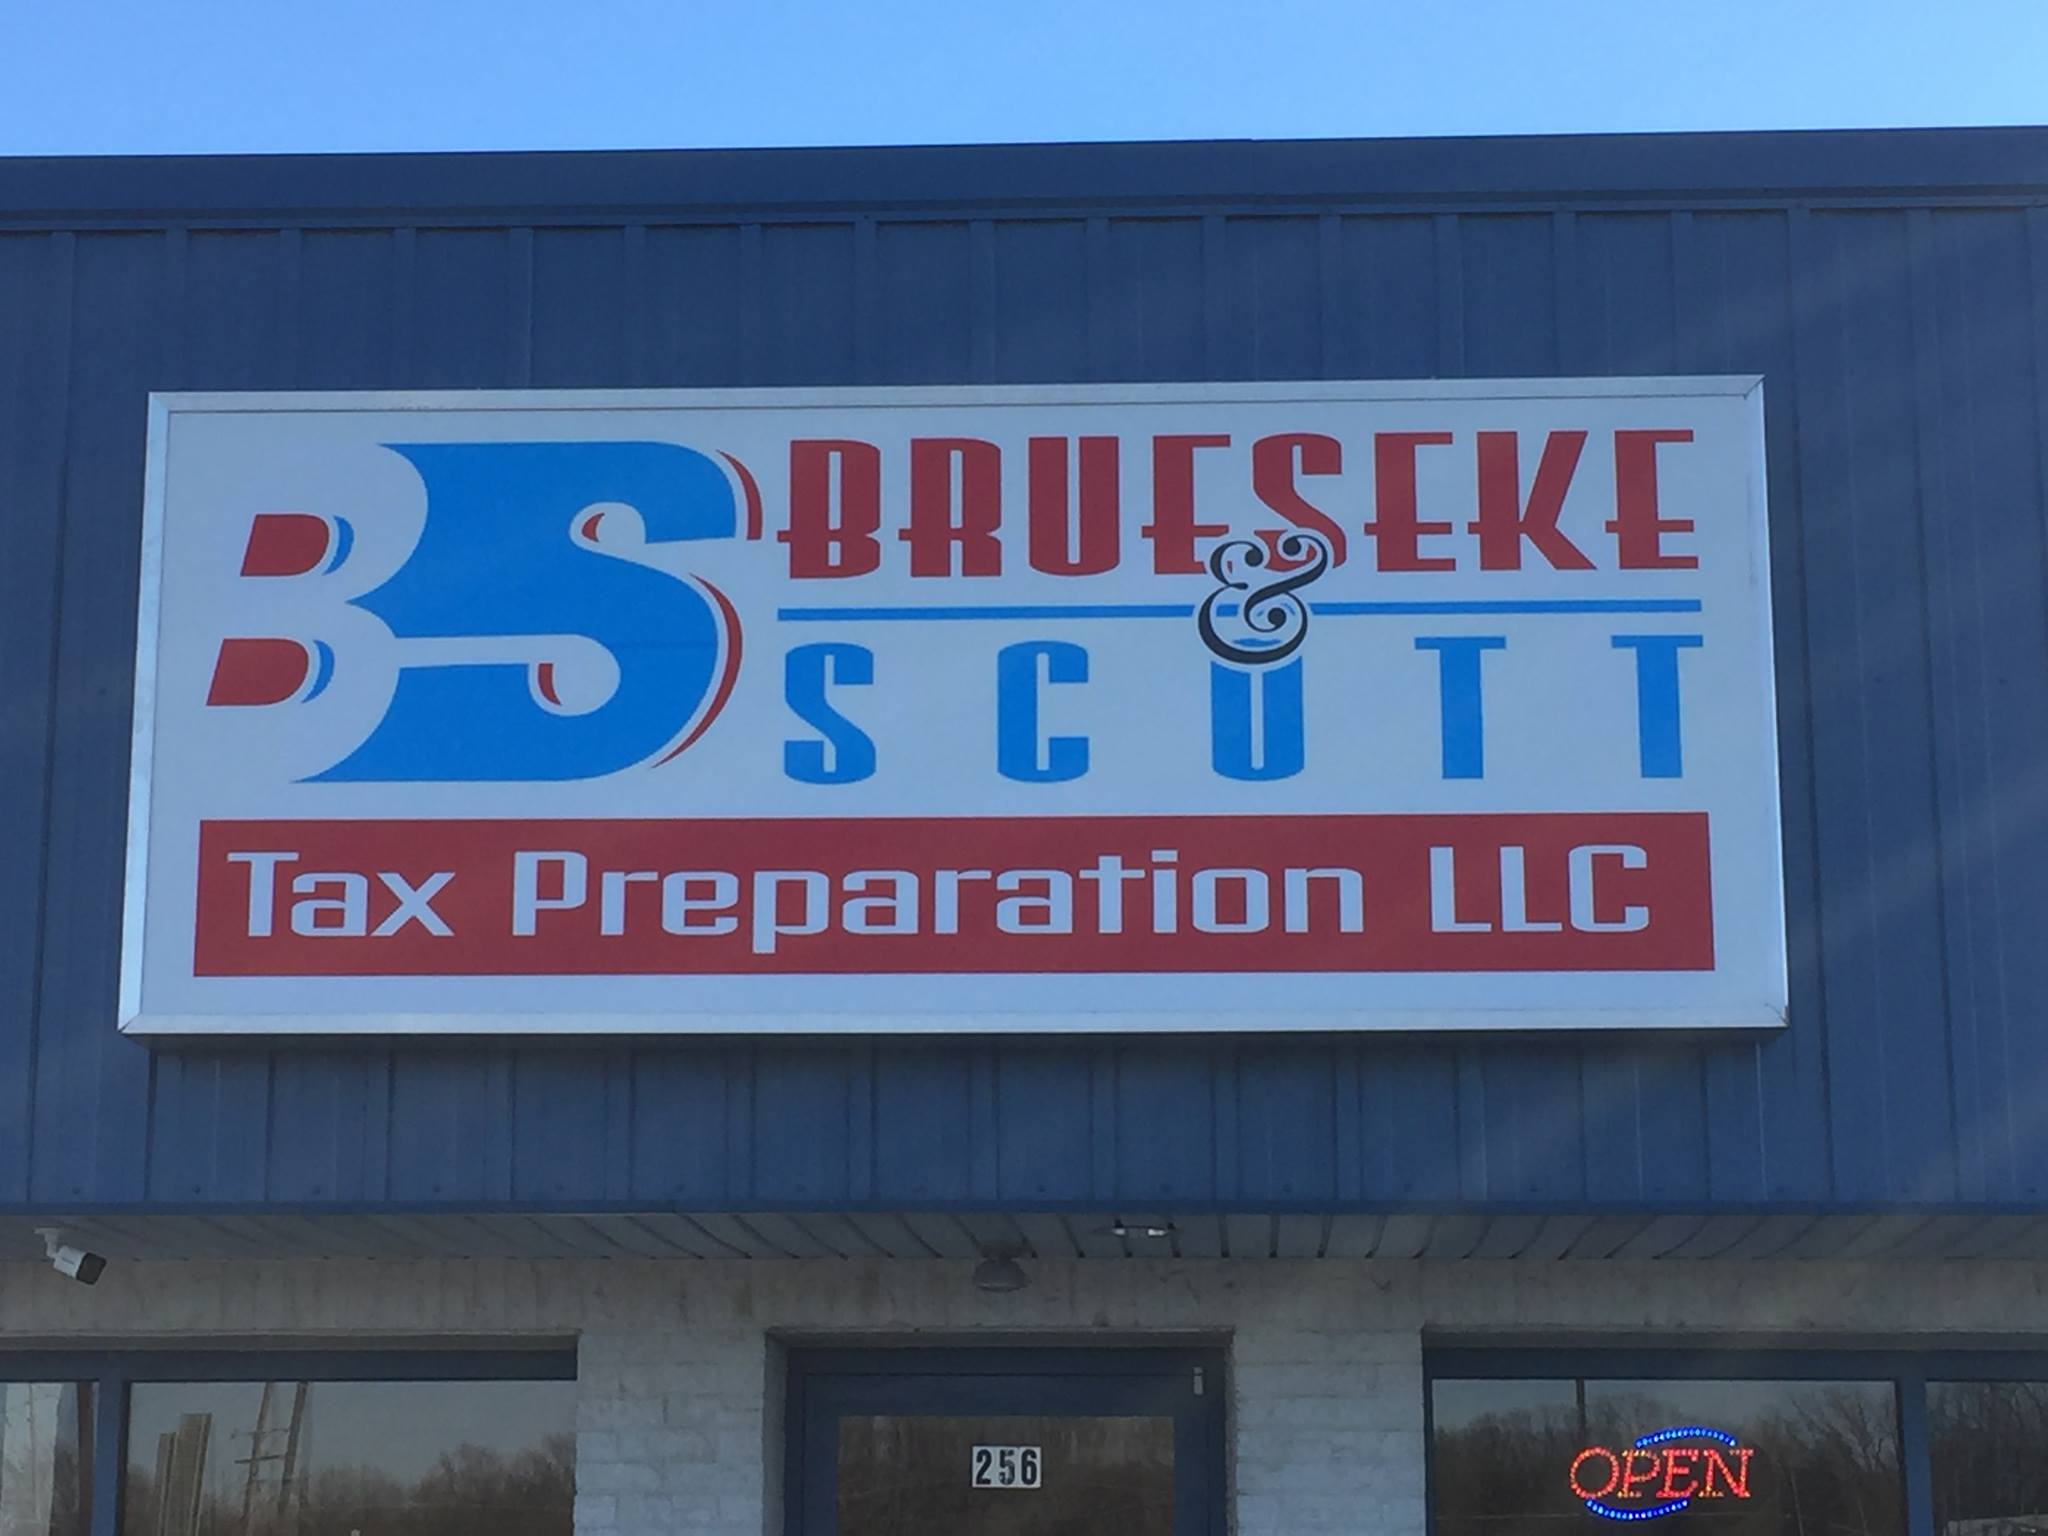 Brueseke & Scott Tax Preparations 256 S Service Rd W, Sullivan Missouri 63080